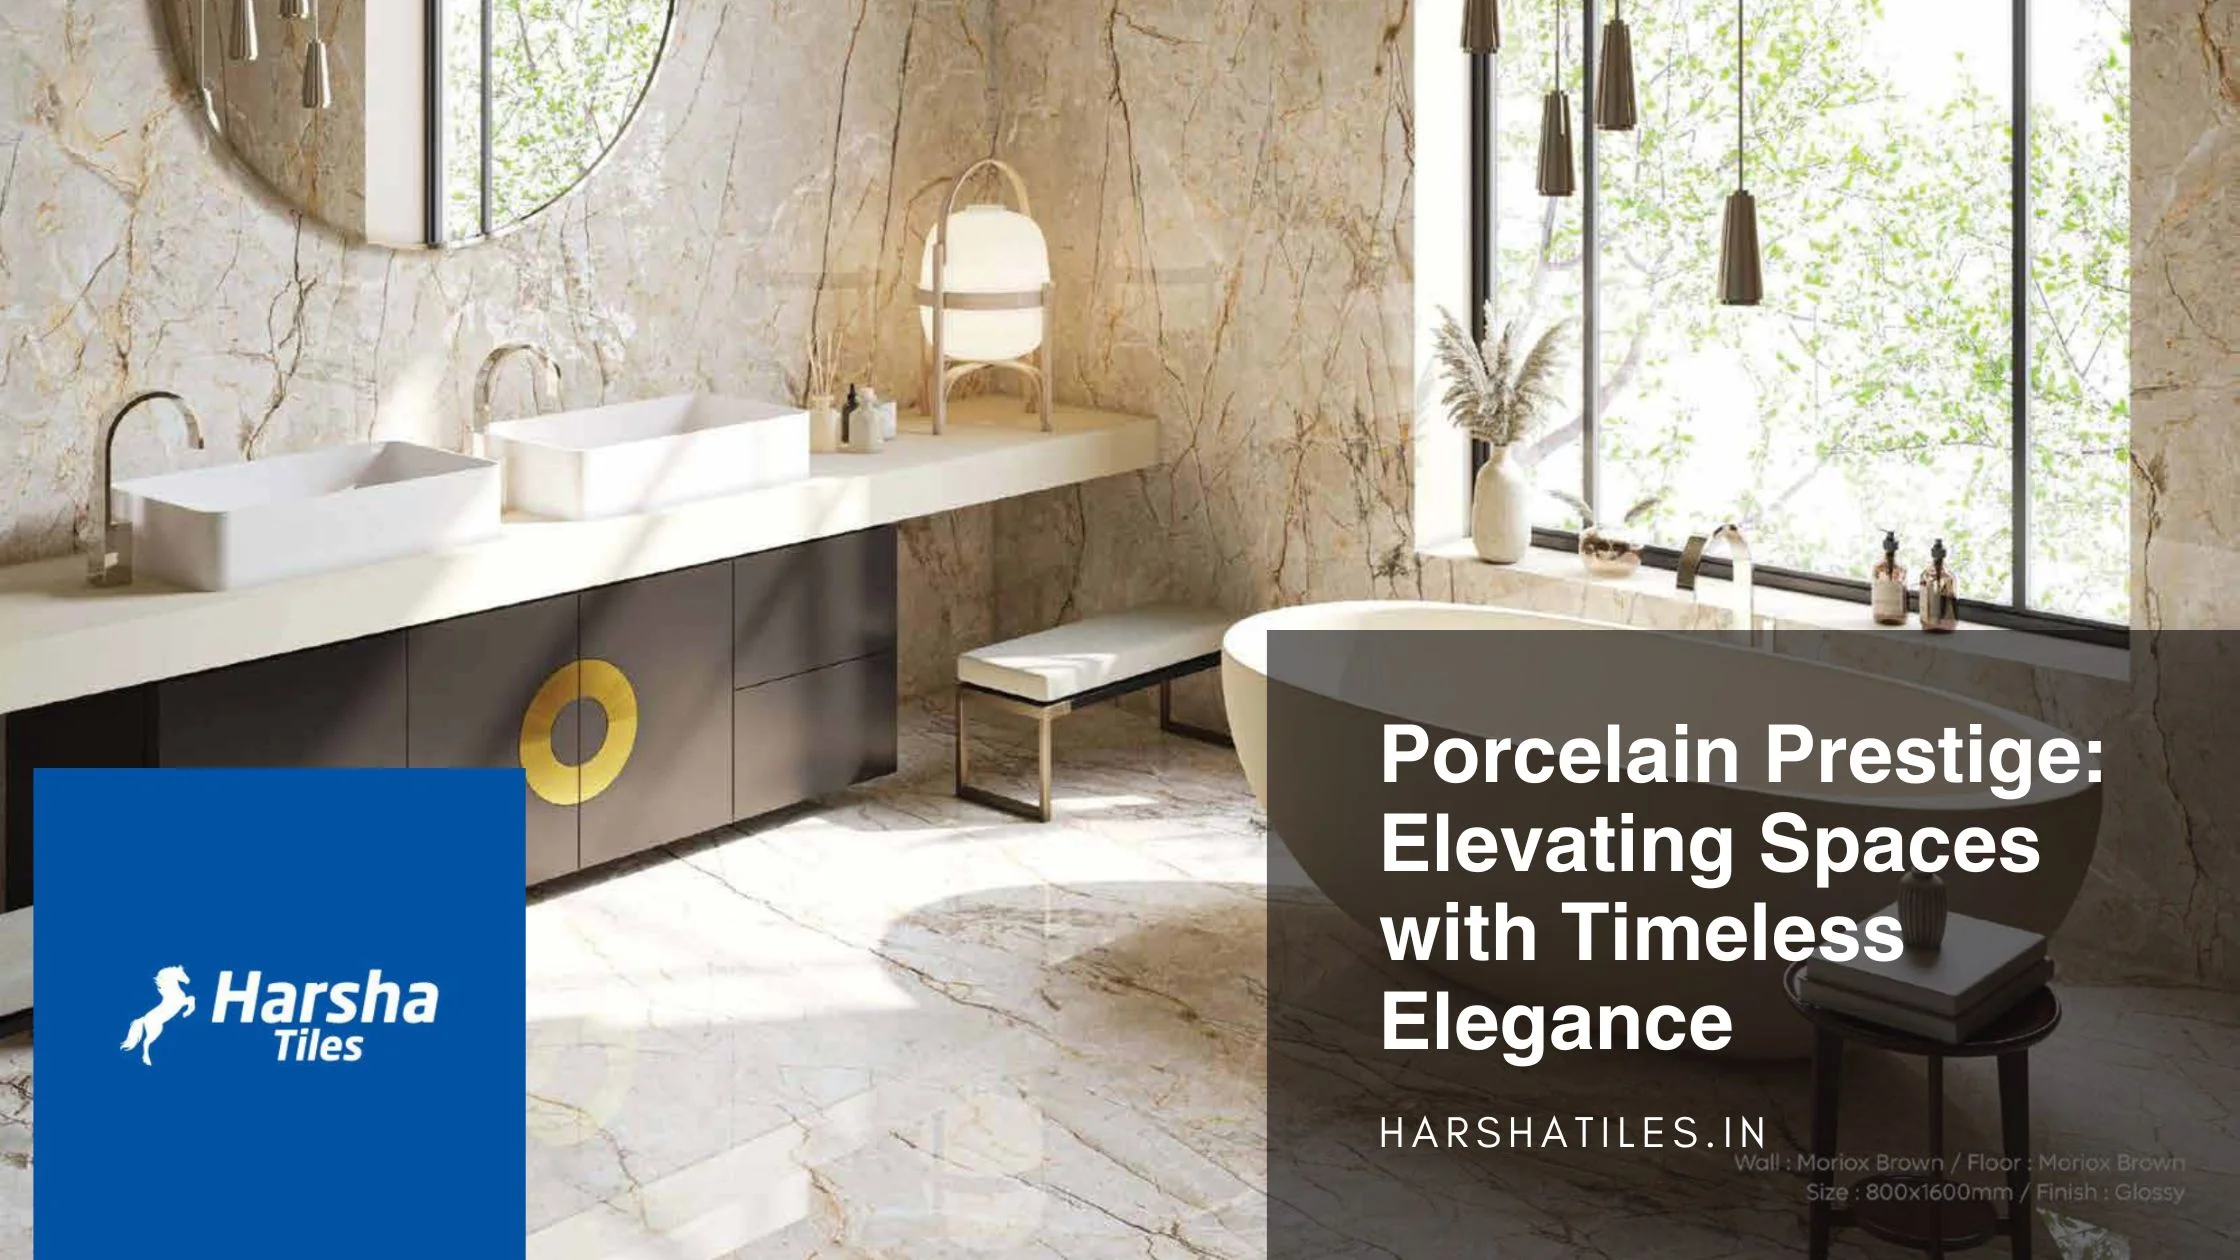 Porcelain Prestige: Elevating Spaces with Timeless Elegance